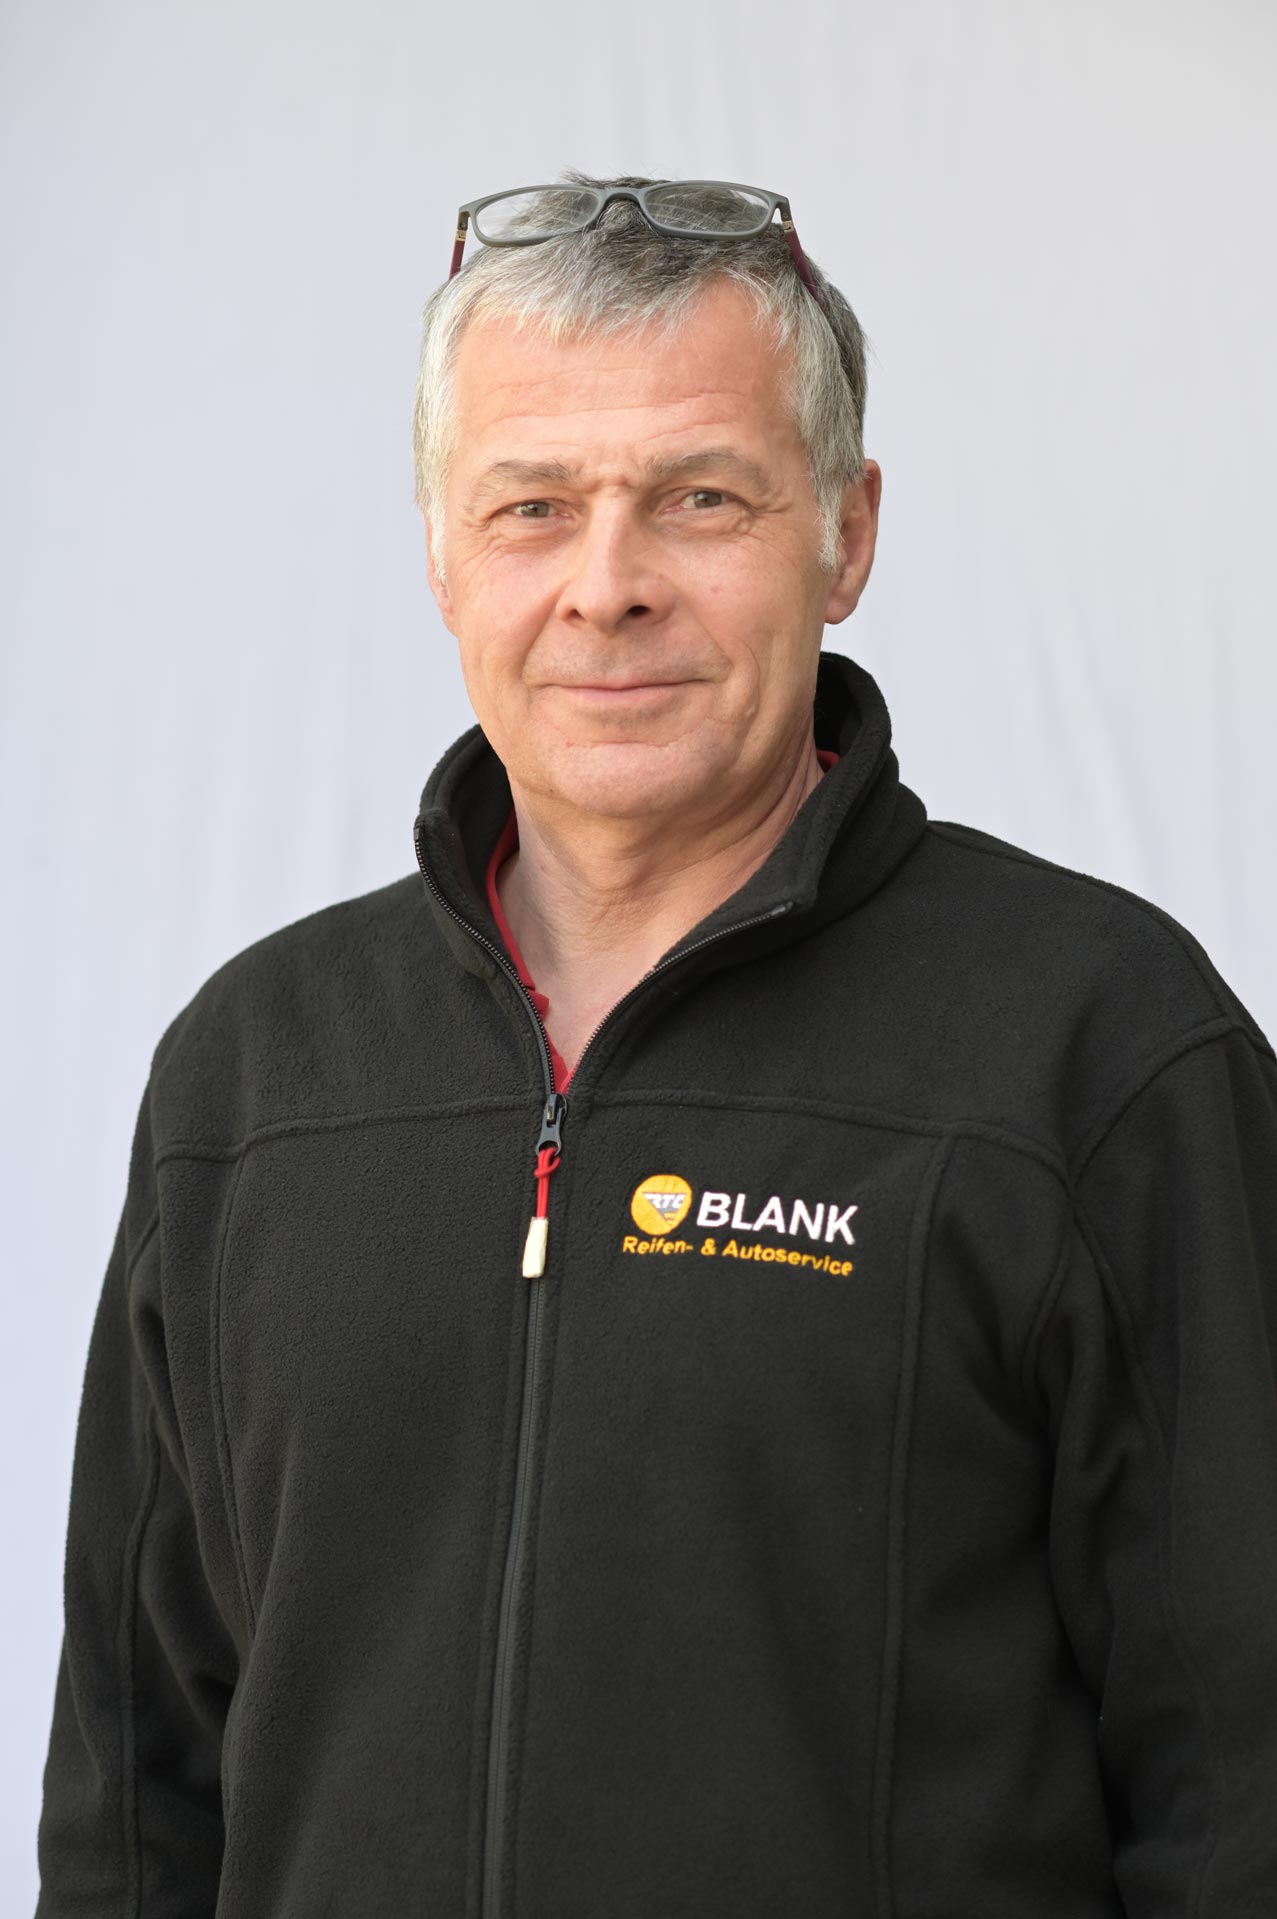  Frank Hartmann